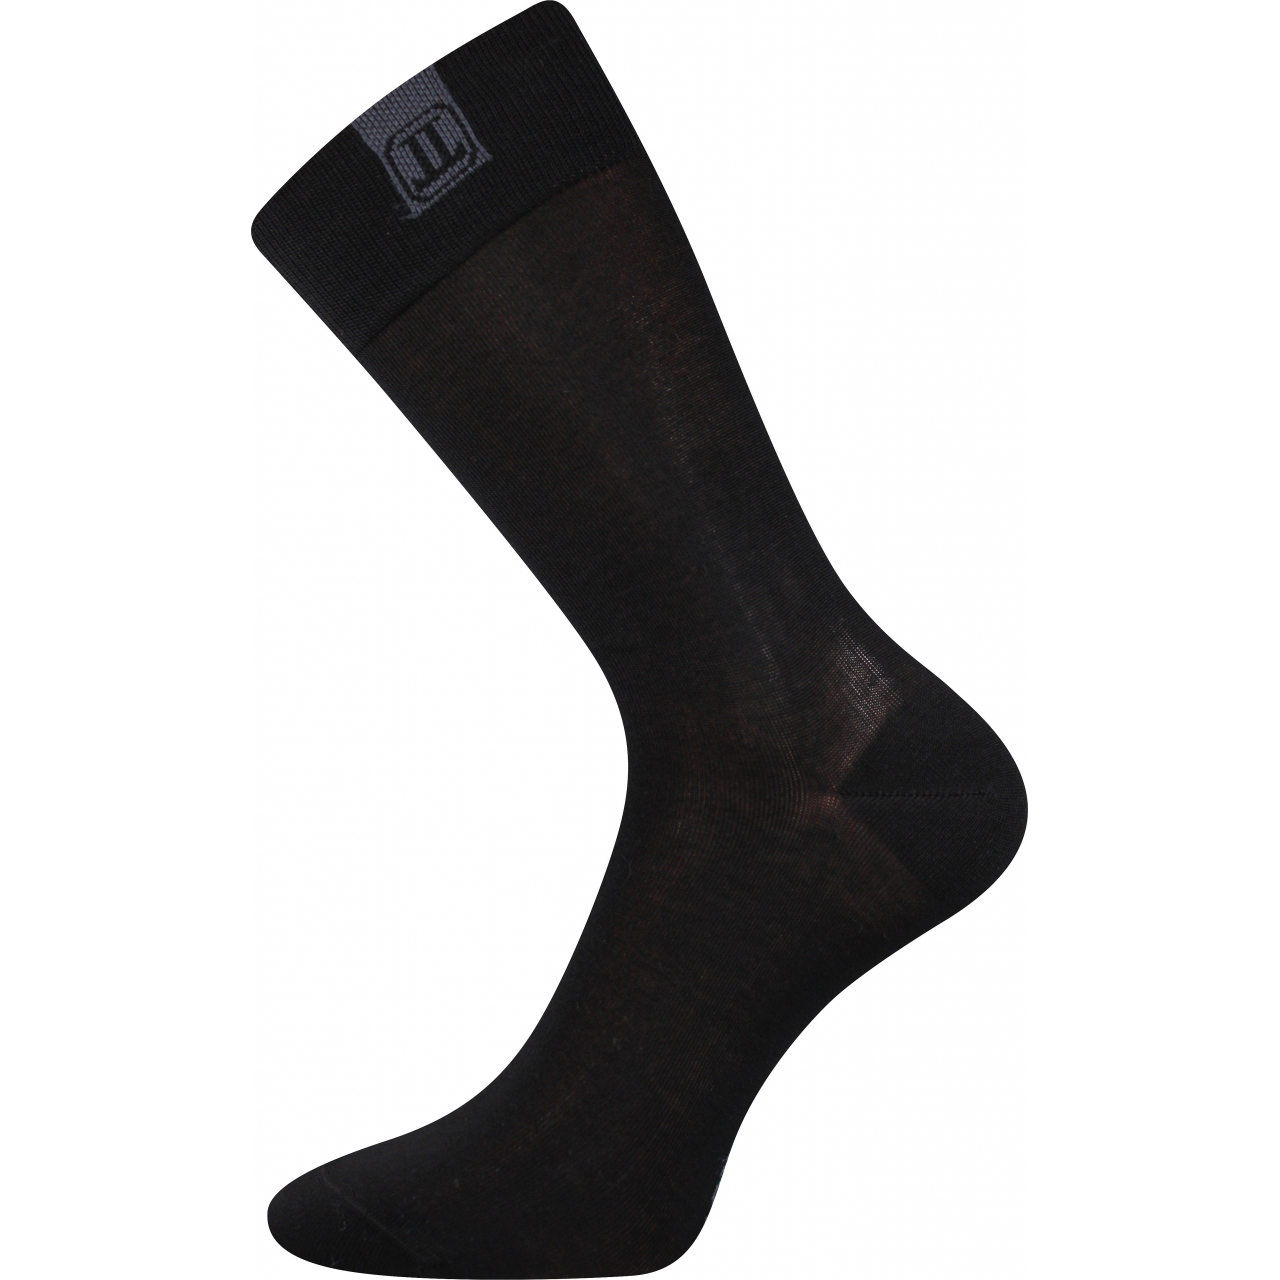 Ponožky pánské společenské Lonka Destyle - černé, 43-46